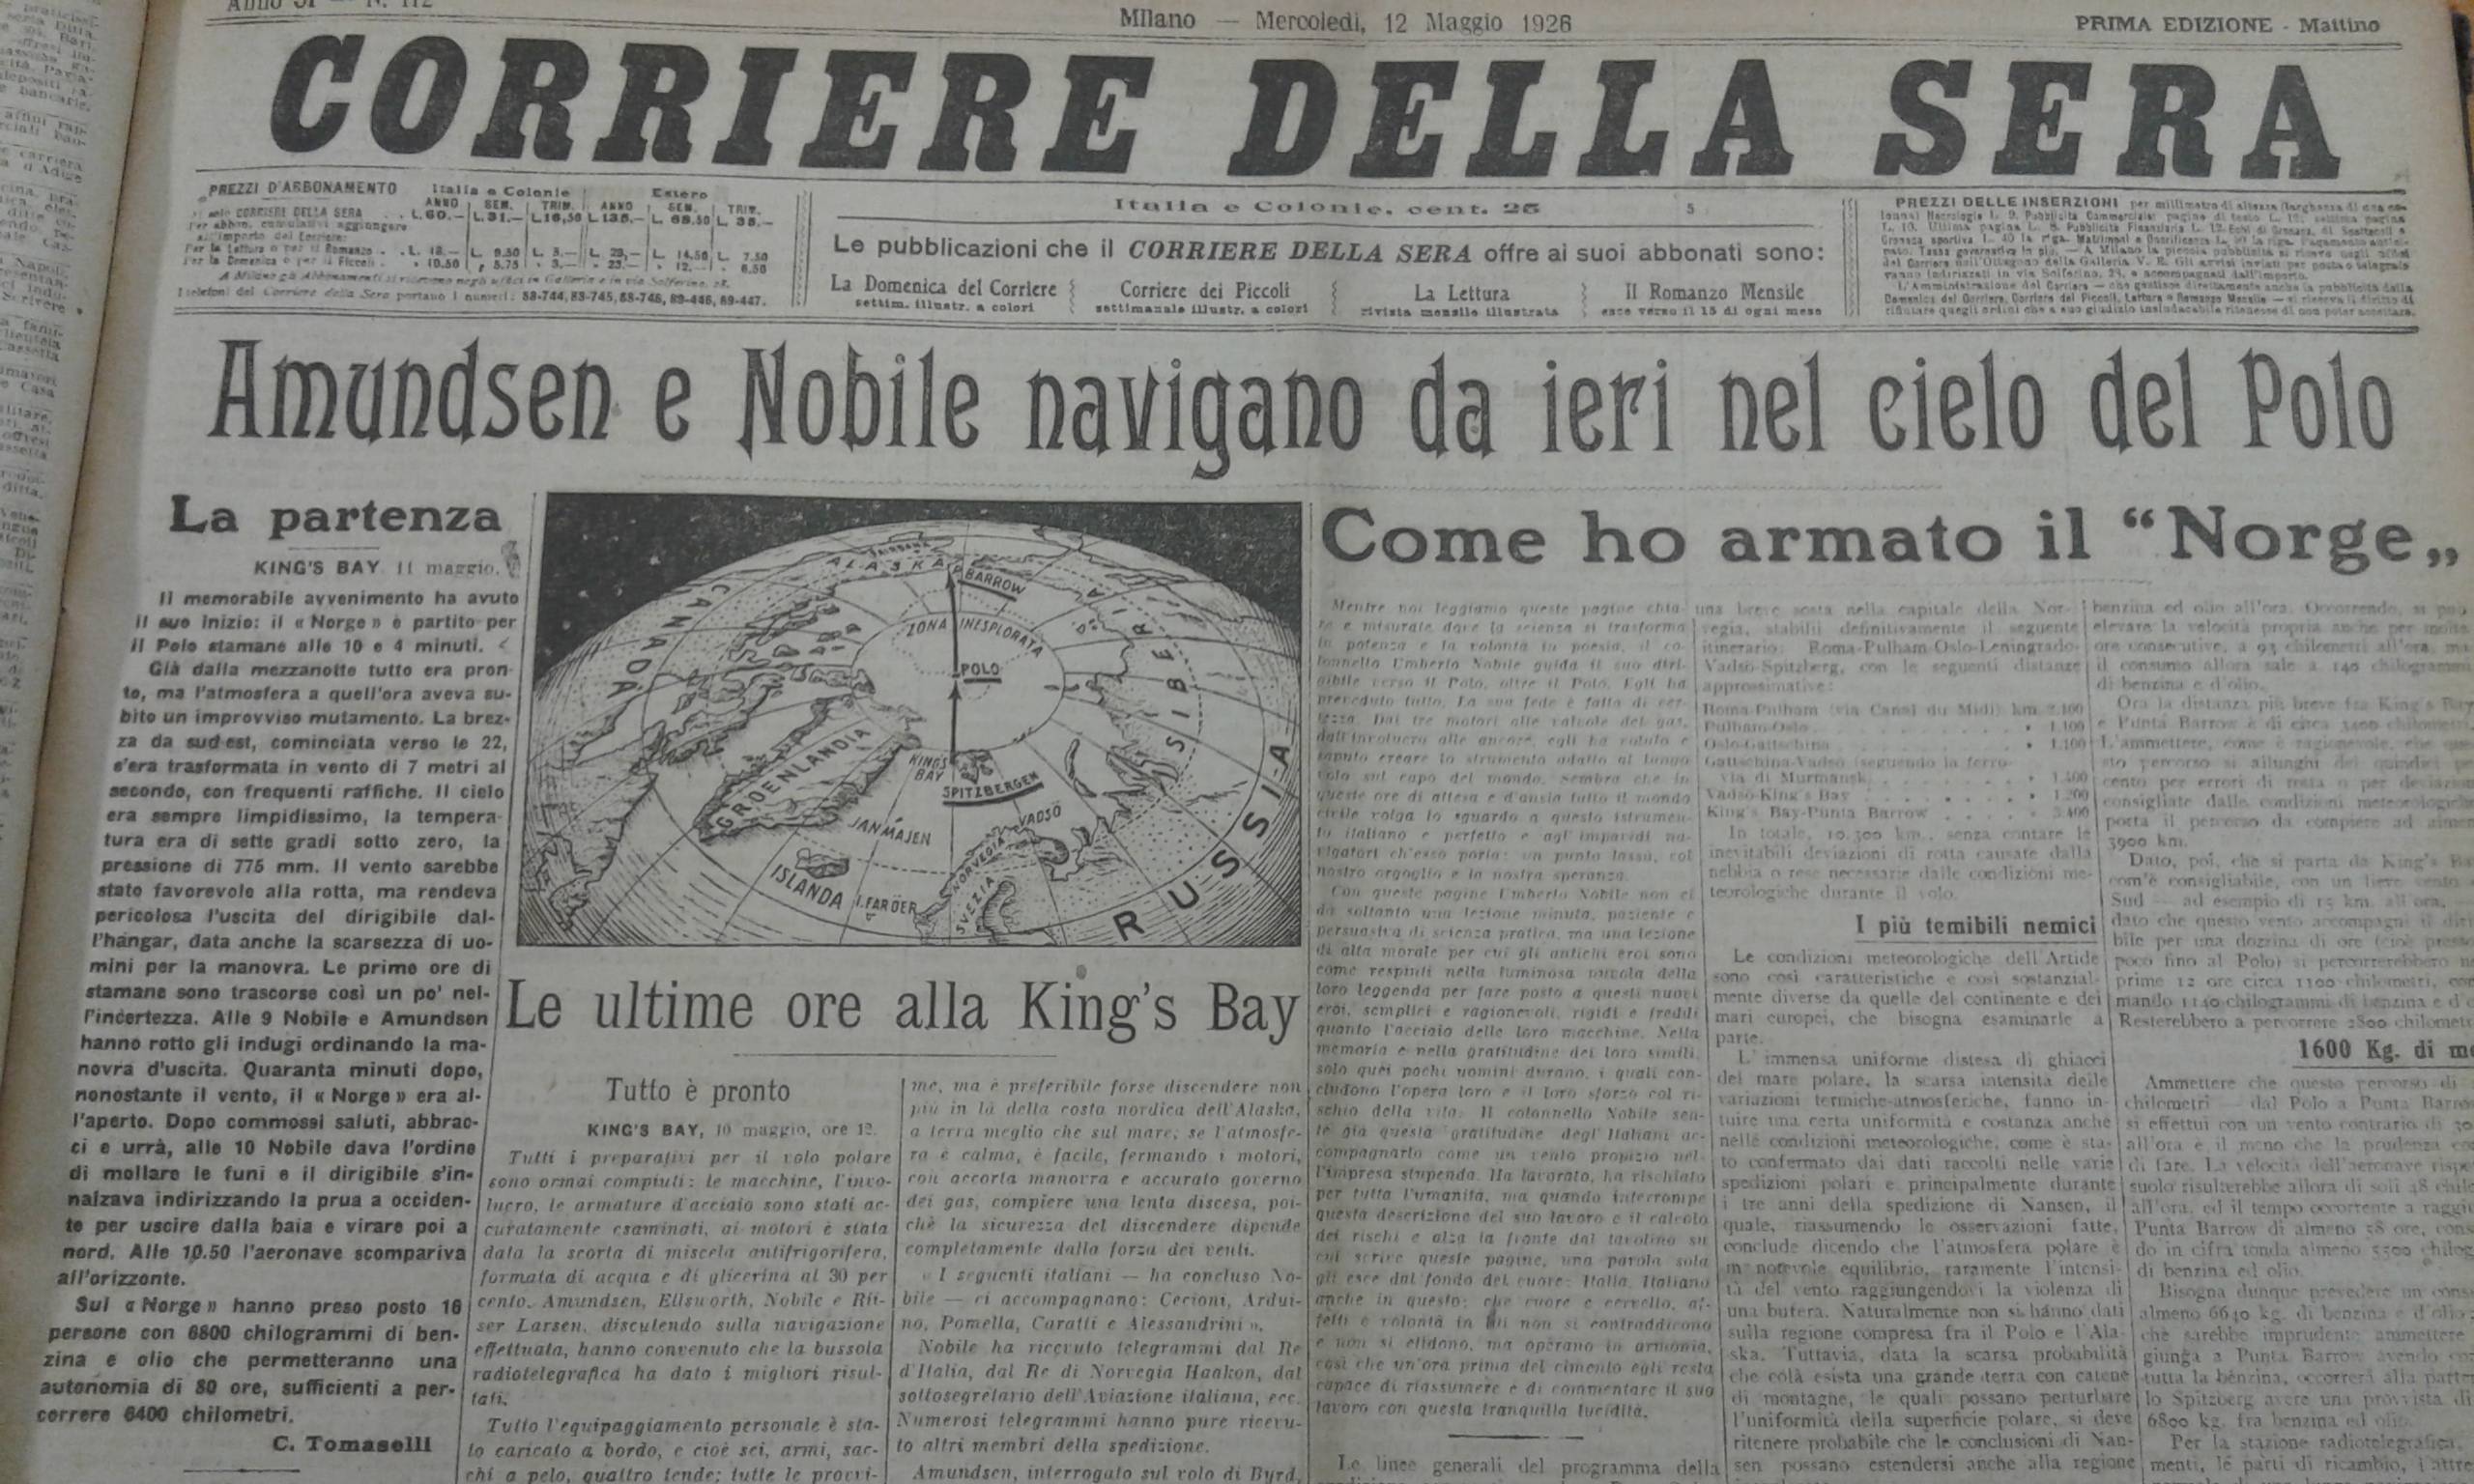 "Corriere della sera", 12 maggio 1926